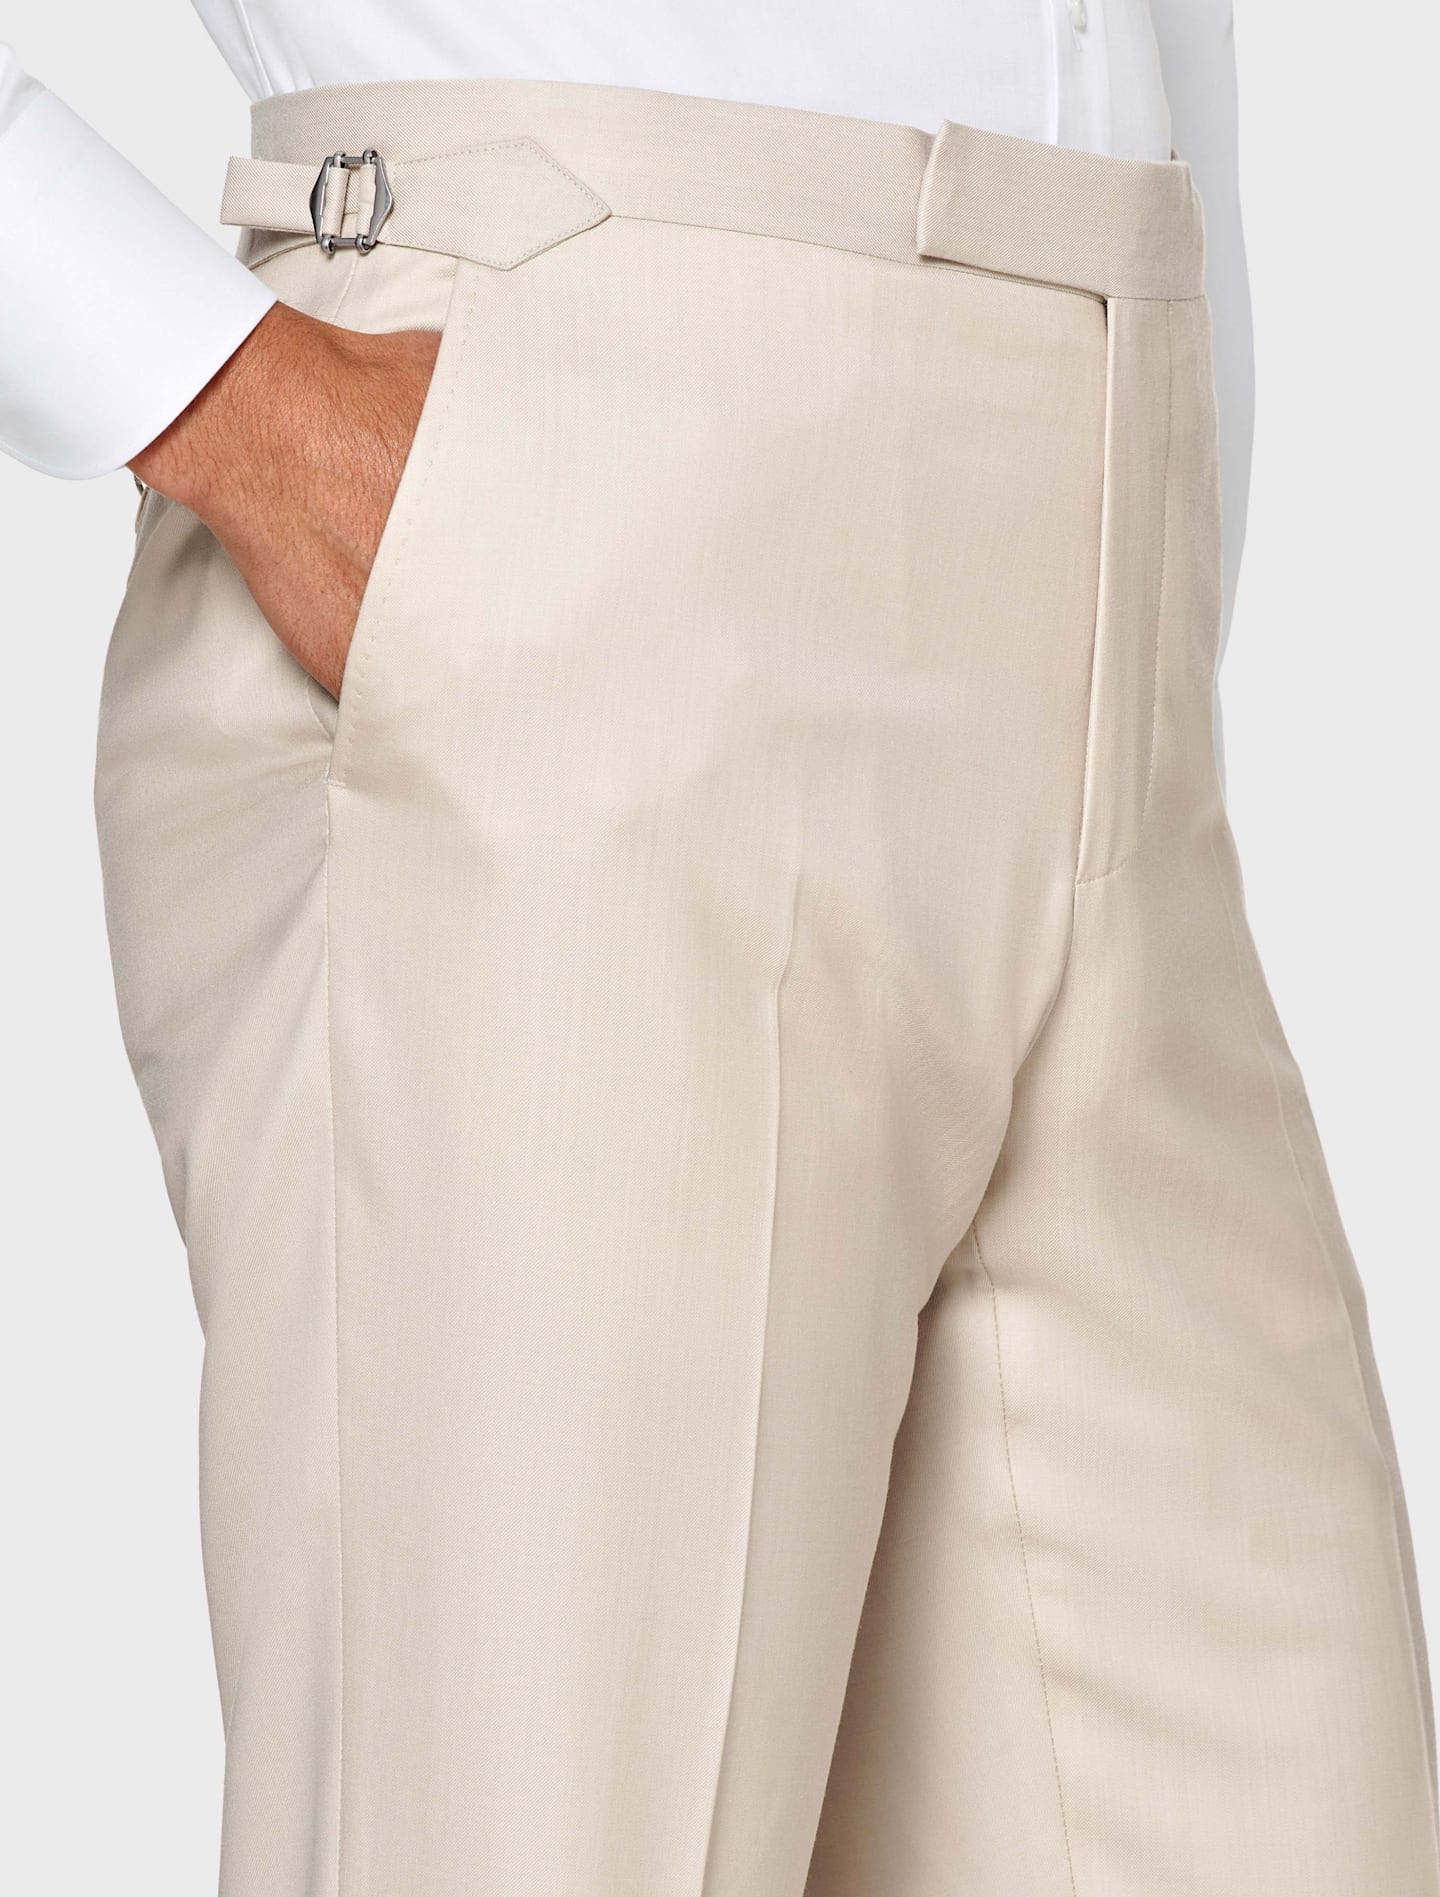 Jasnobrązowe spodnie z regulatorami szerokości po bokach